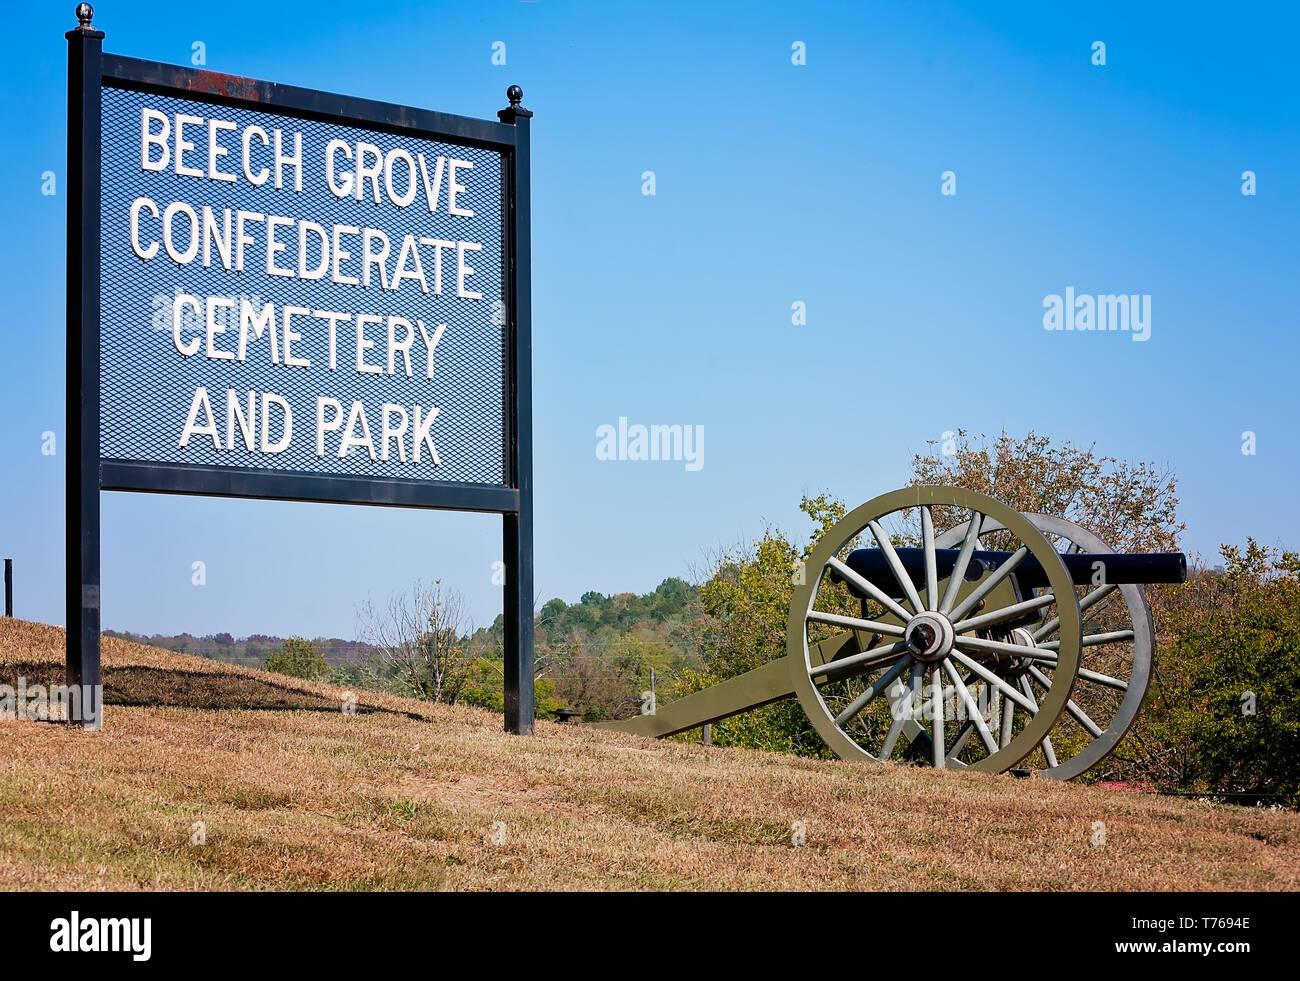 Die Beech Grove konföderierten Friedhof und Park Eingang Zeichen ist neben einem Bürgerkrieg cannon, Oktober 7, 2010, in Beechgrove, Tennessee angezeigt. Stockfoto